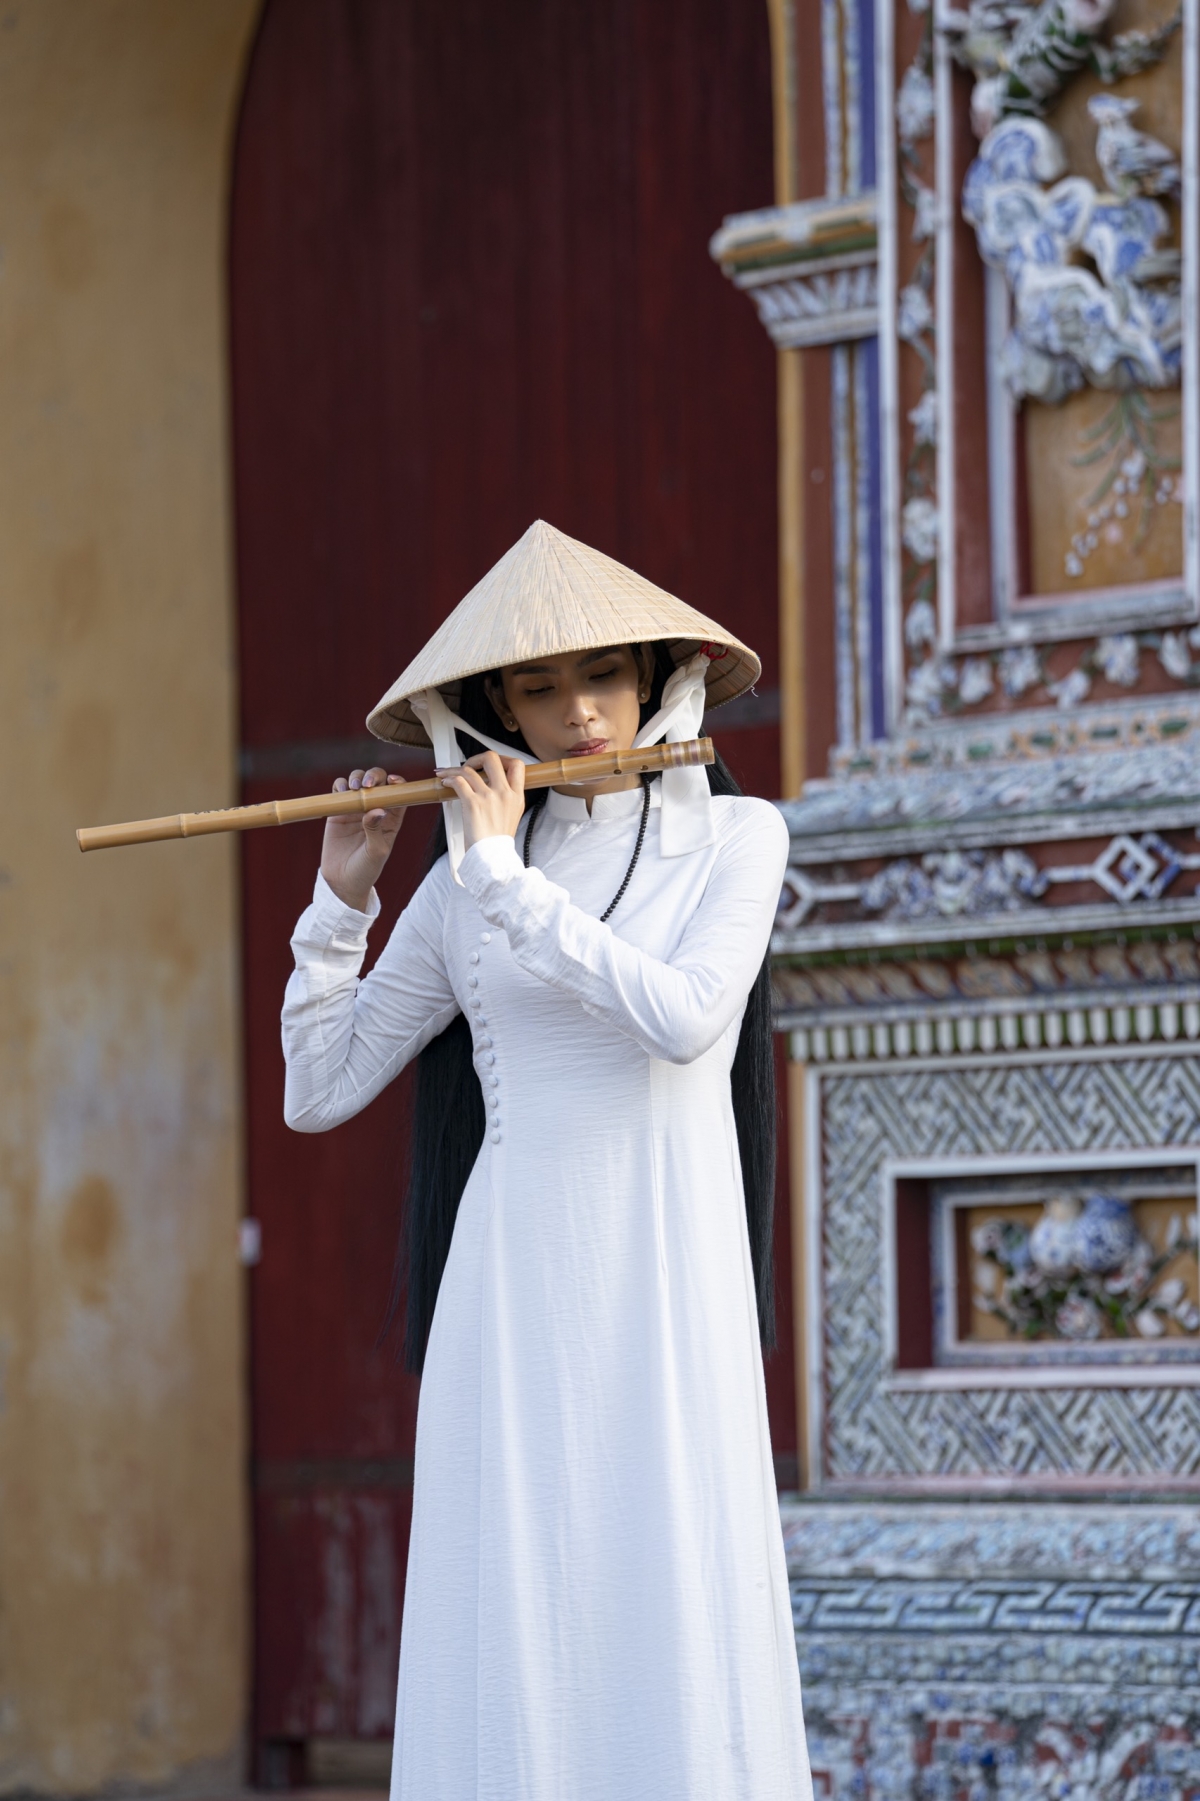 Trương Thị May thướt tha diện áo dài trắng ở kinh thành Huế - Ảnh 6.